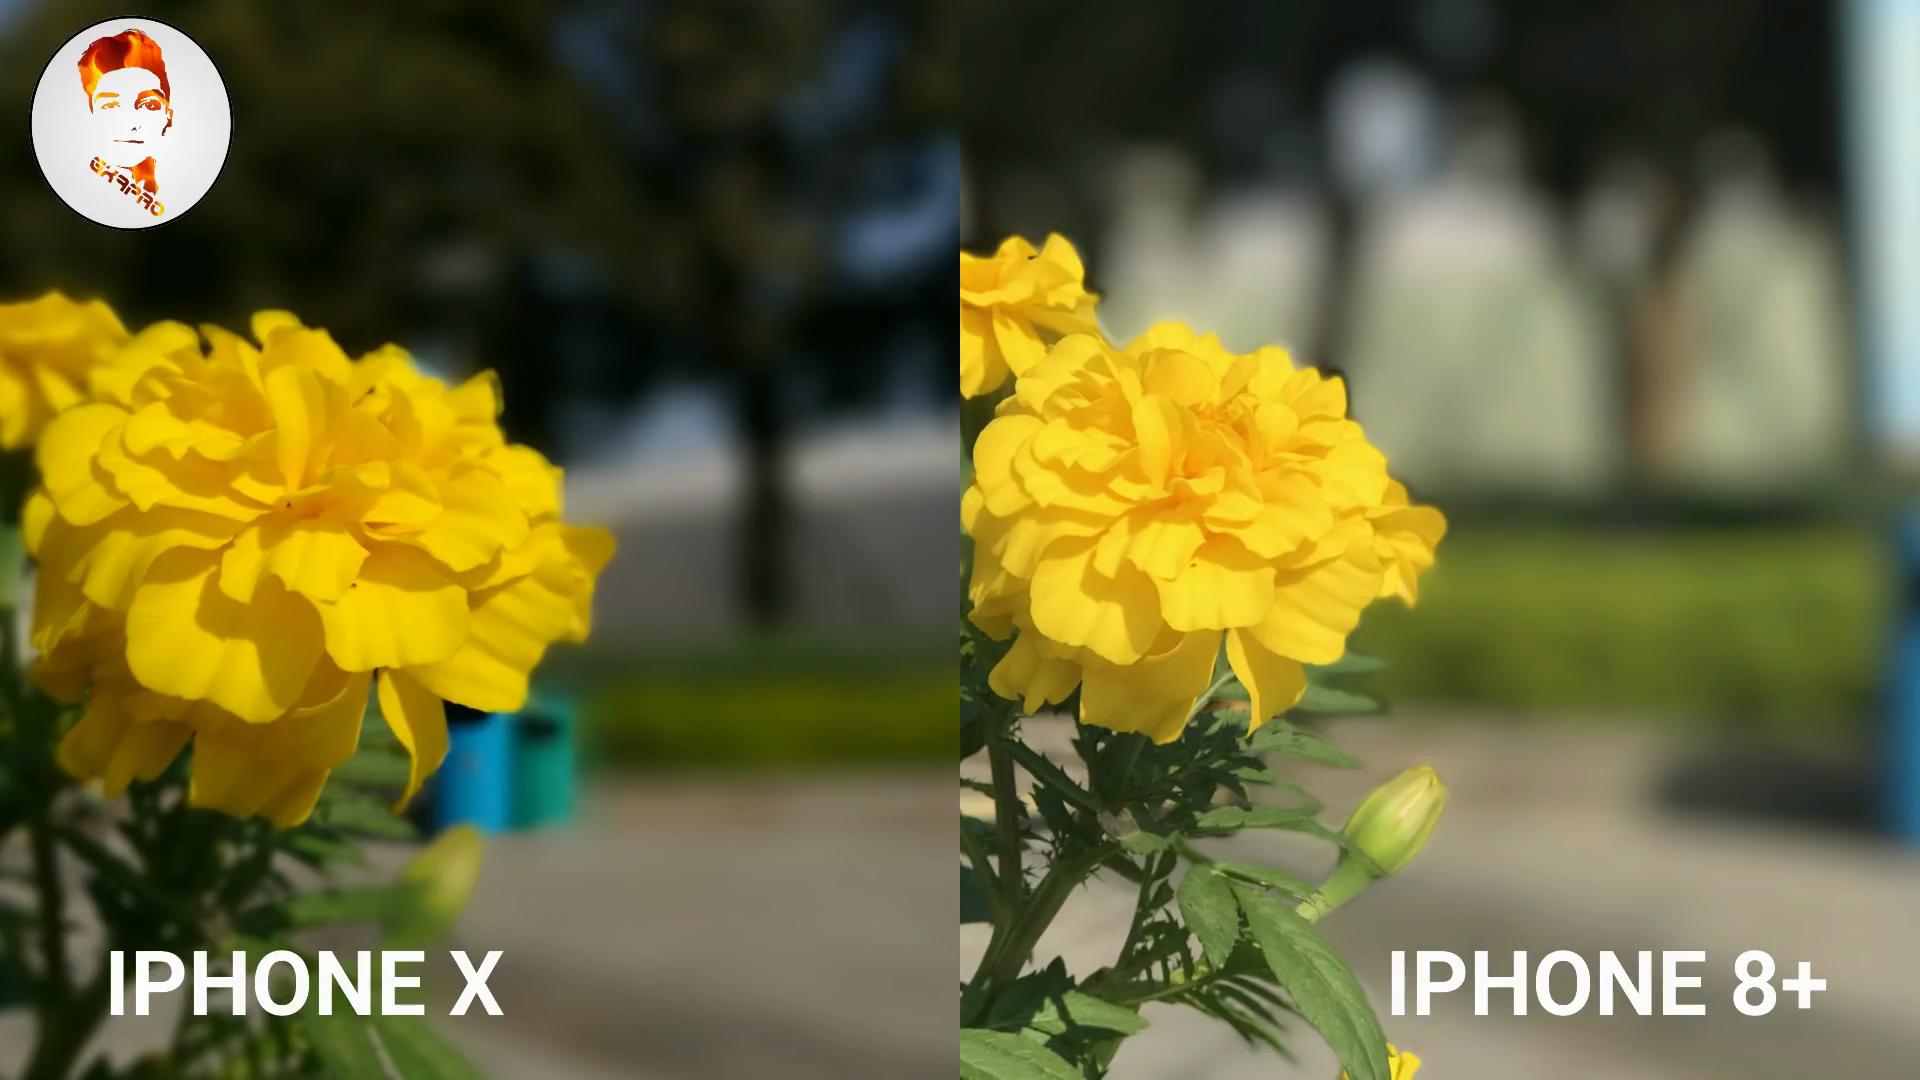 景深效果,iphone x和iphone 8plus有啥不同看出来了吗?